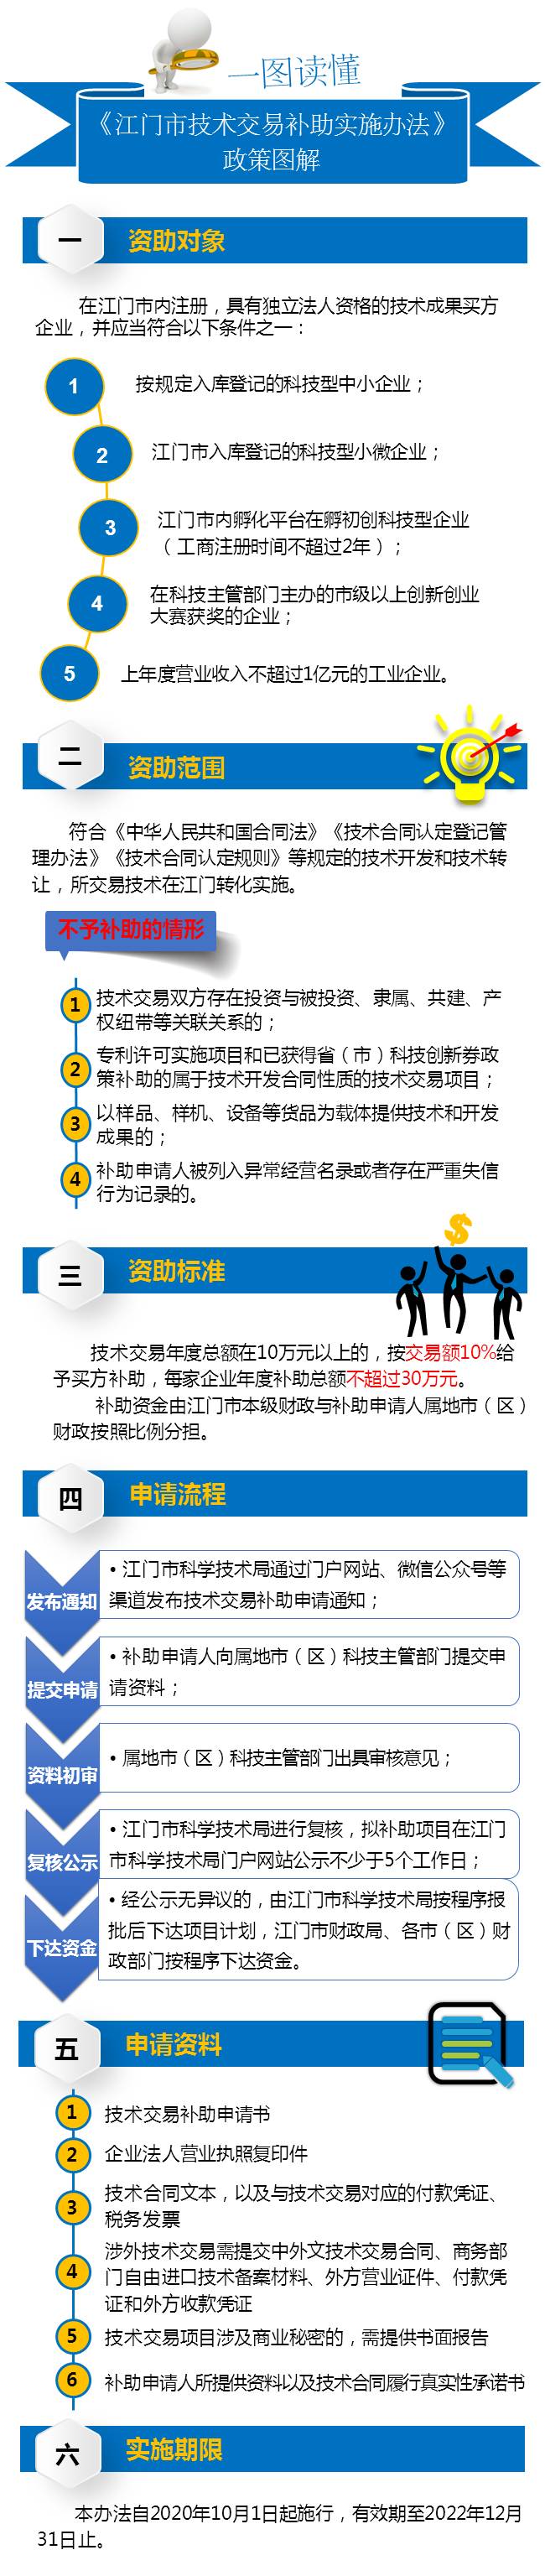 发布材料3：《江门市技术交易补助实施办法》政策图解.jpg